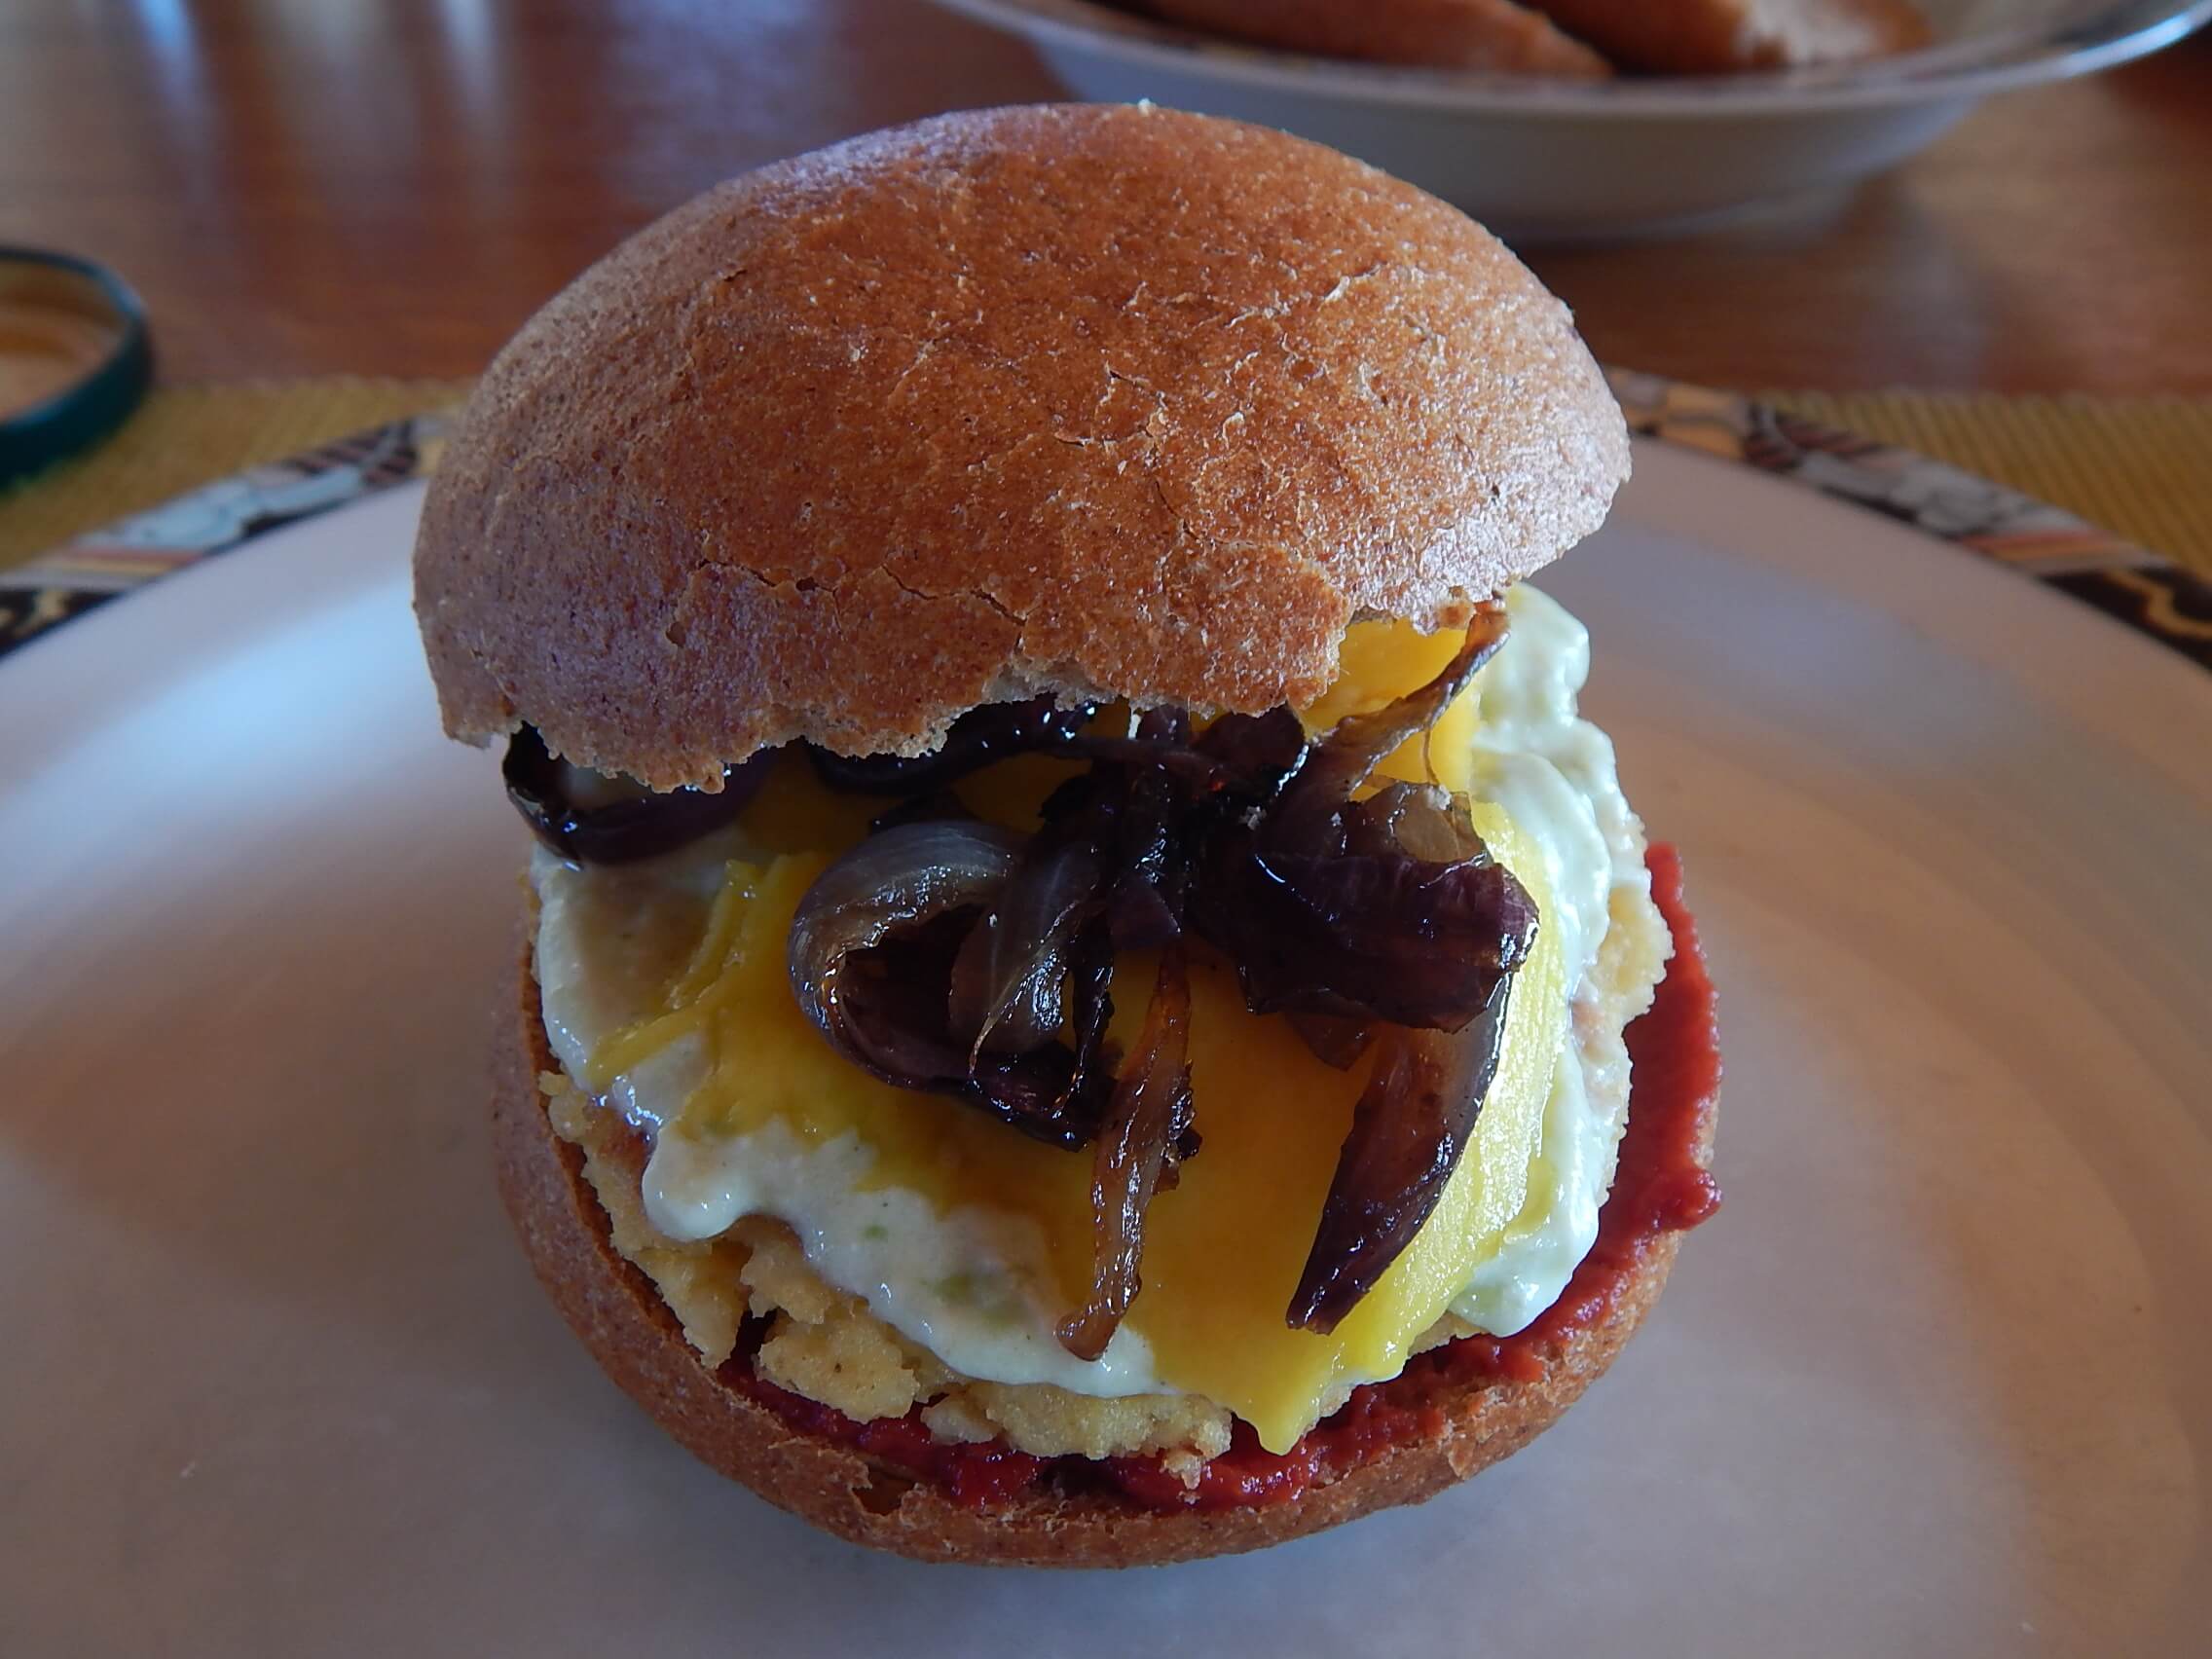 Ein Hirseburger auf einem Teller. Sehr lecker mit Mango und Zwiebeln .